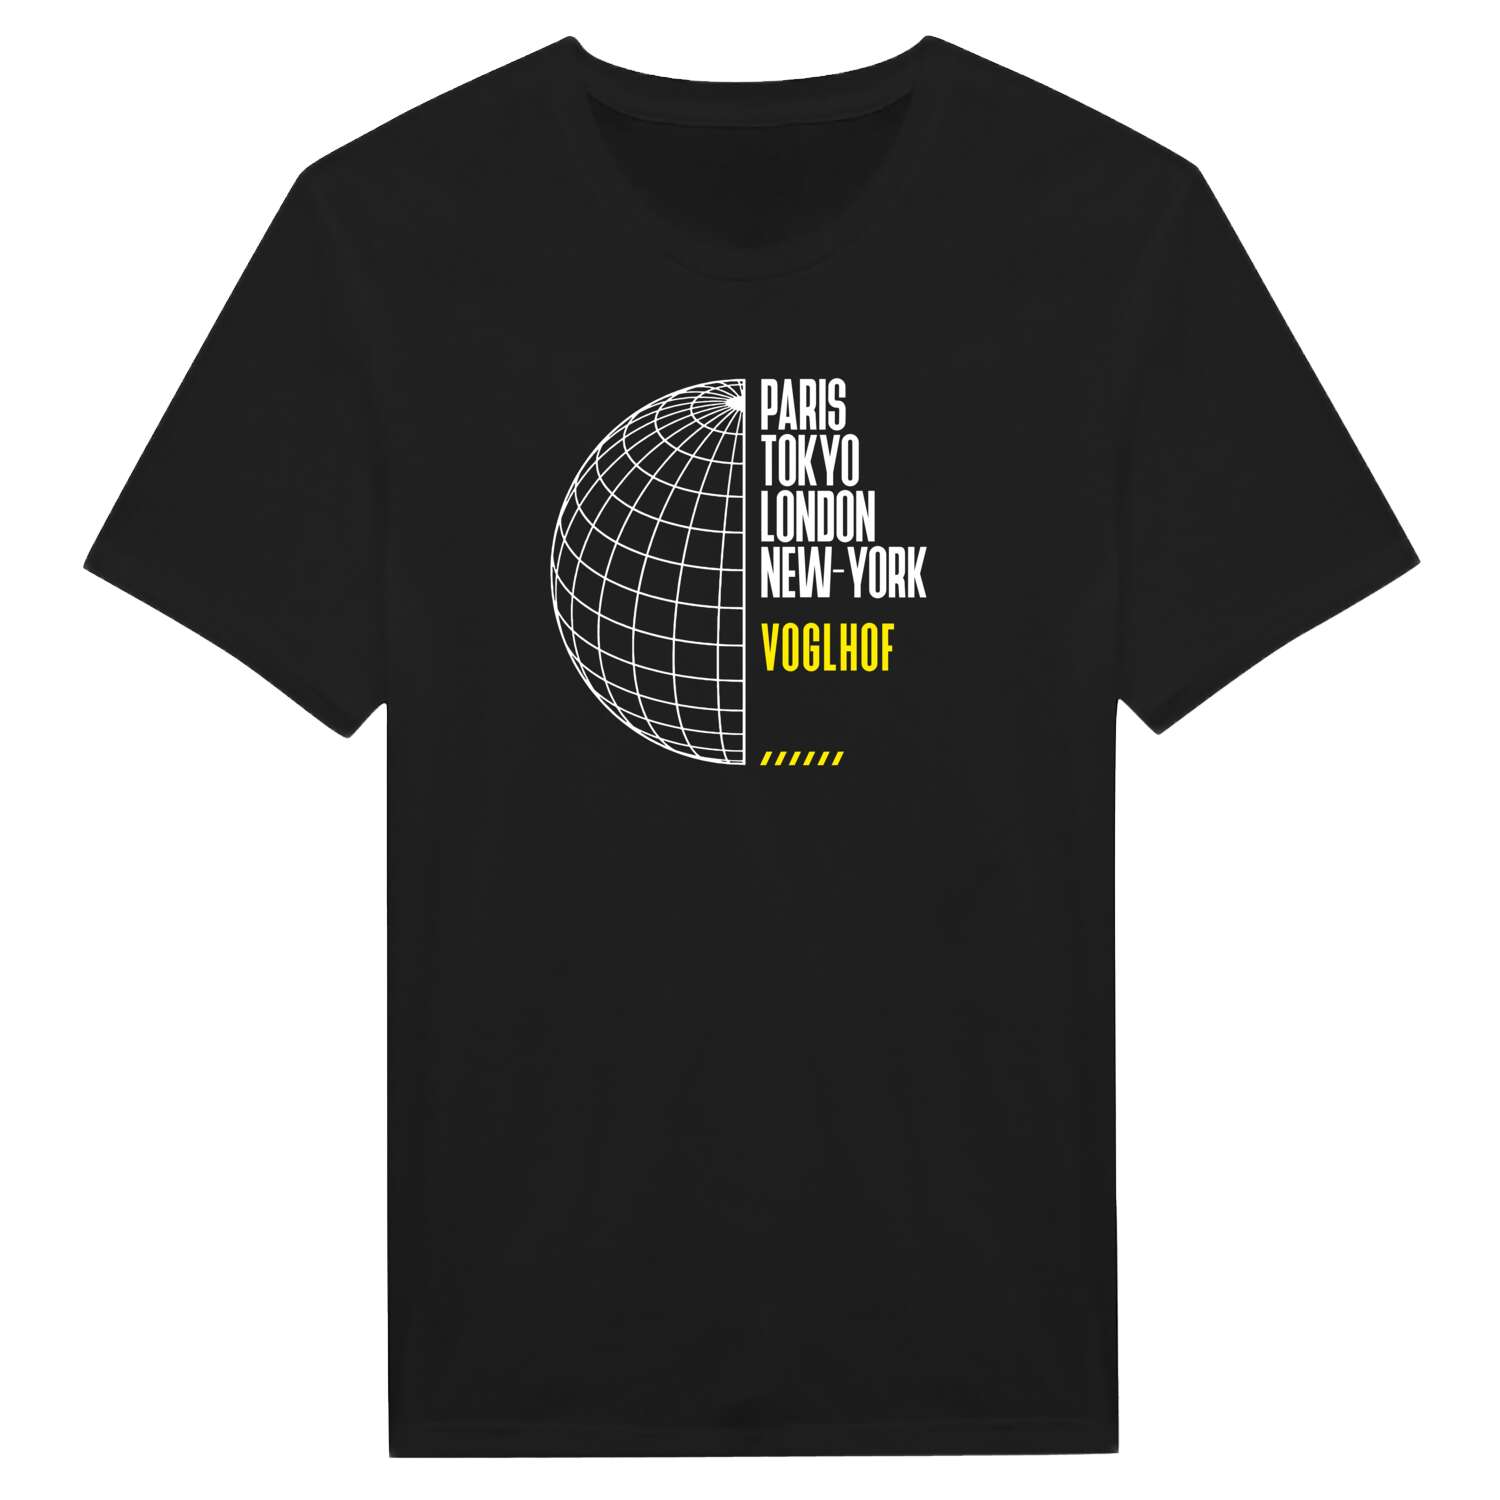 Voglhof T-Shirt »Paris Tokyo London«